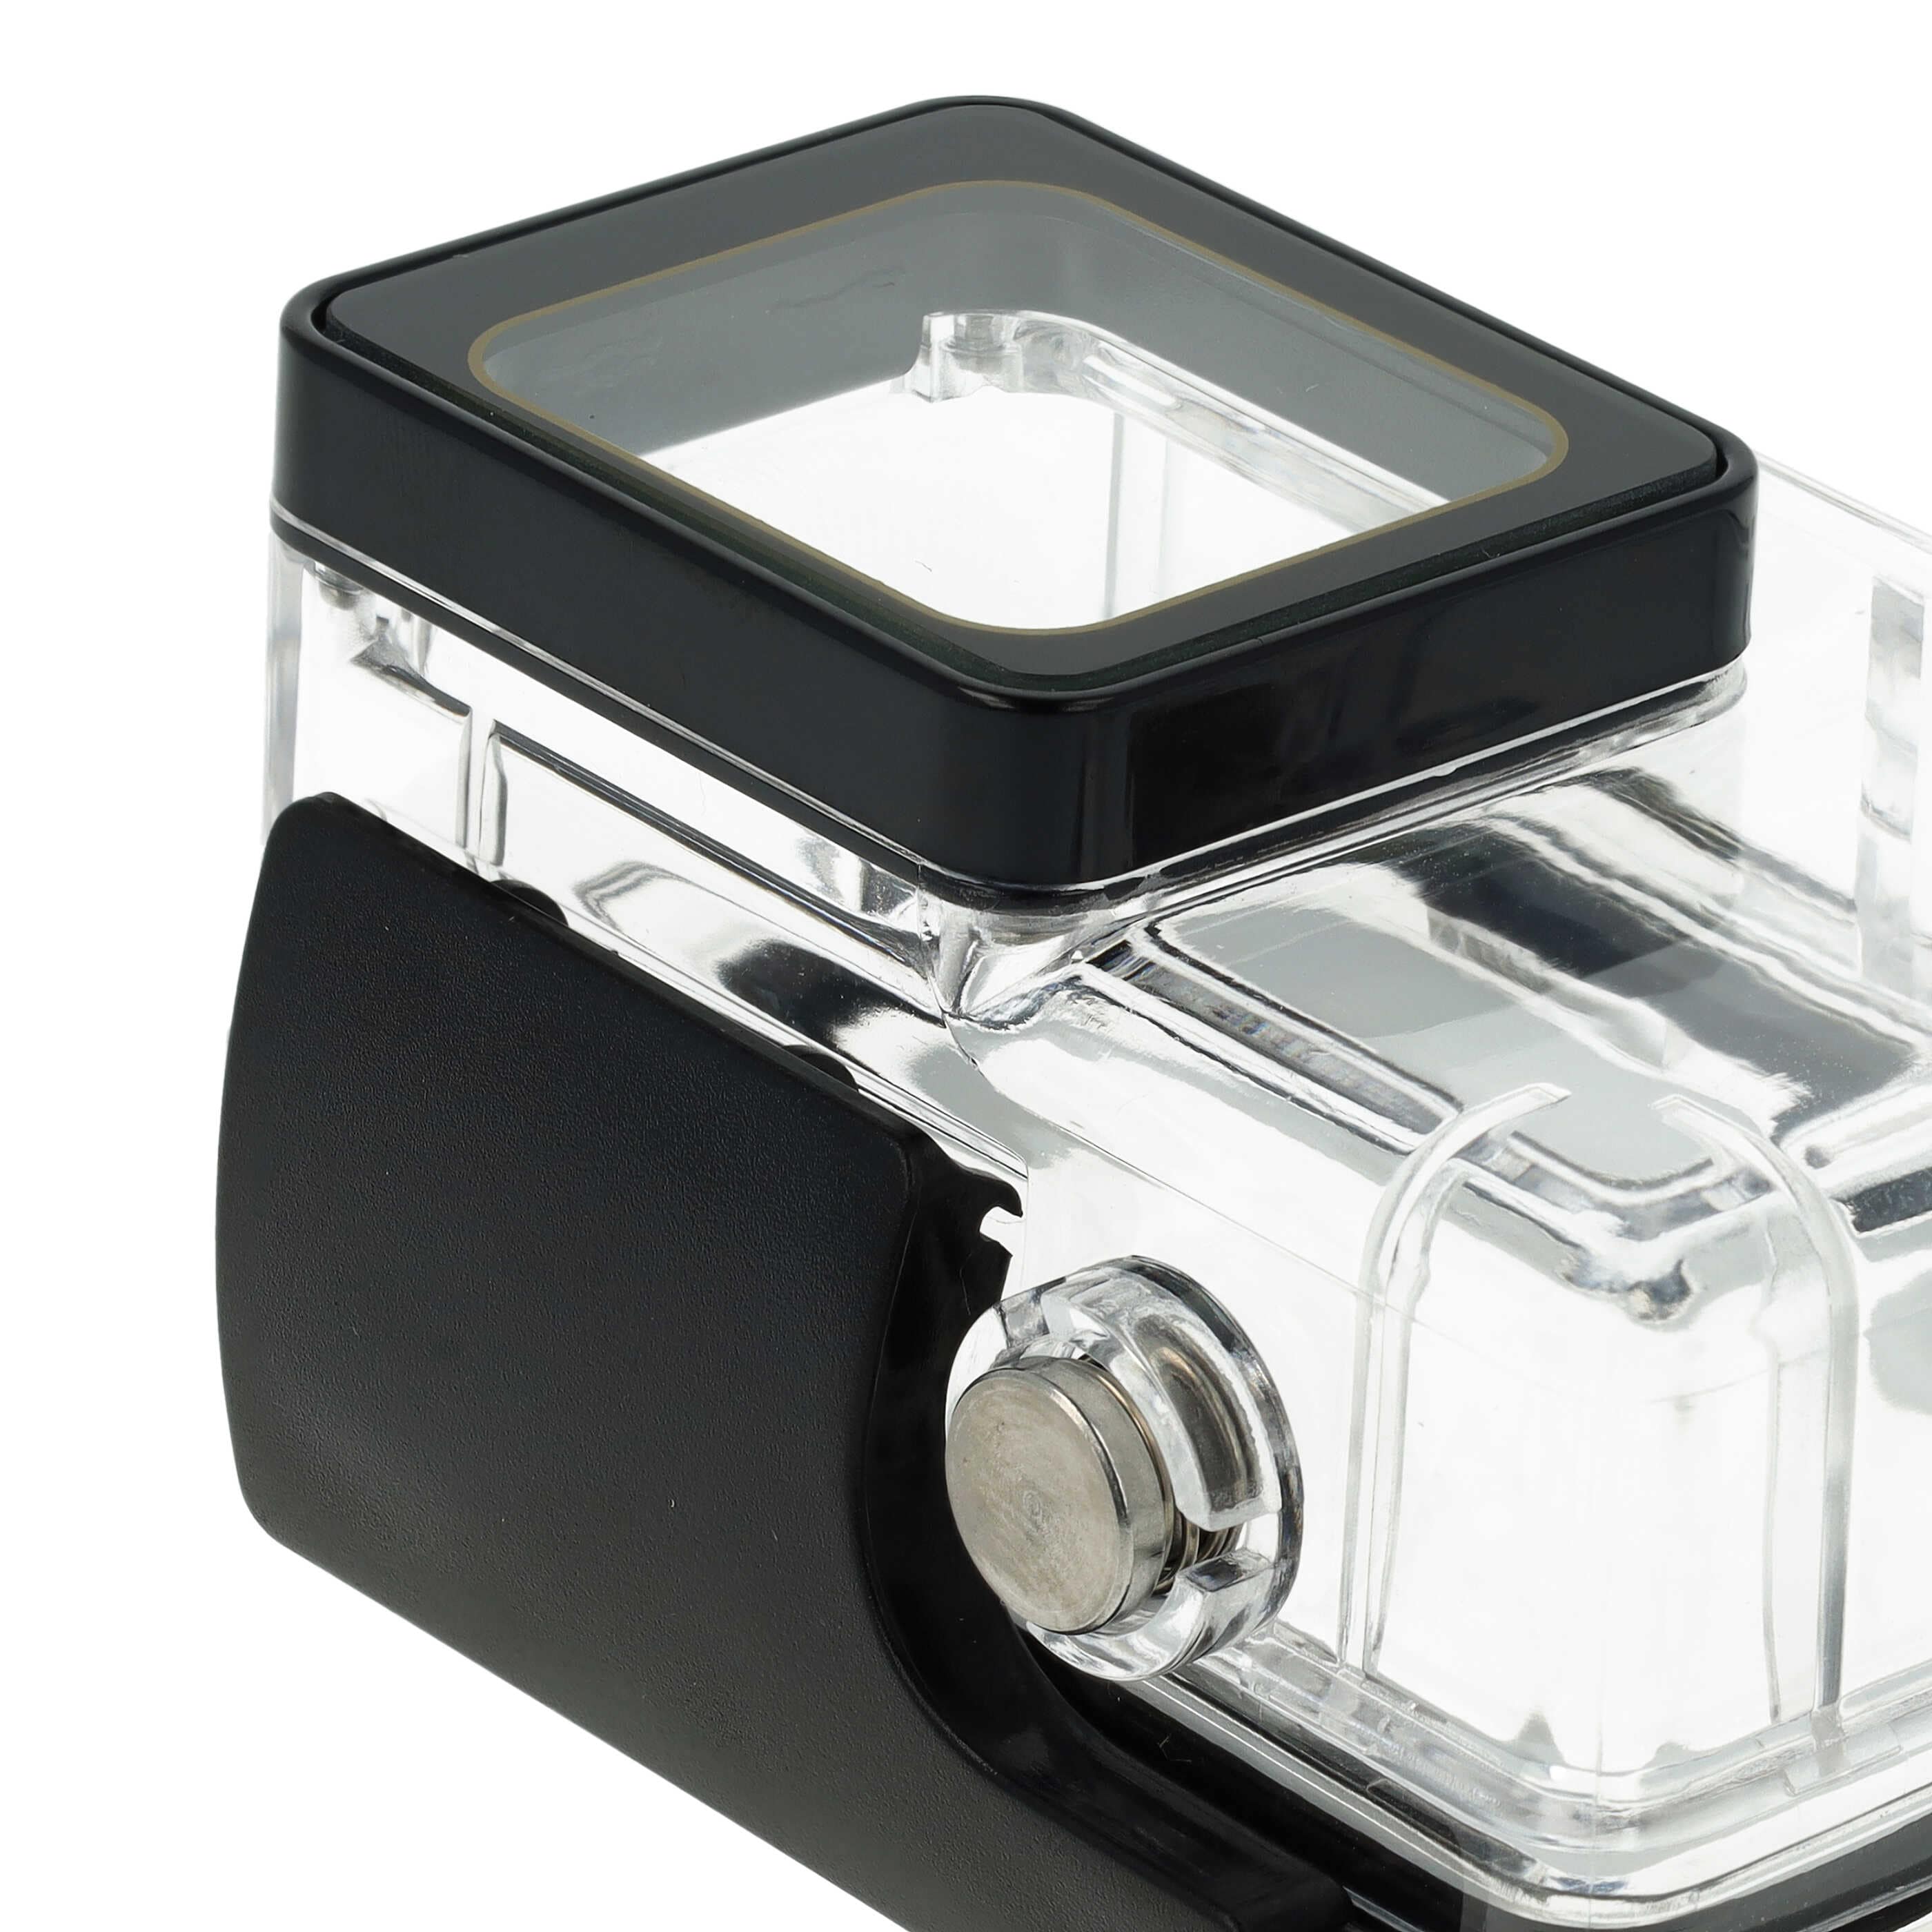 Carcasa sumergible para cámaras acción GoPro Hero 5, 6, 7 - Profundidad máx. 40 m